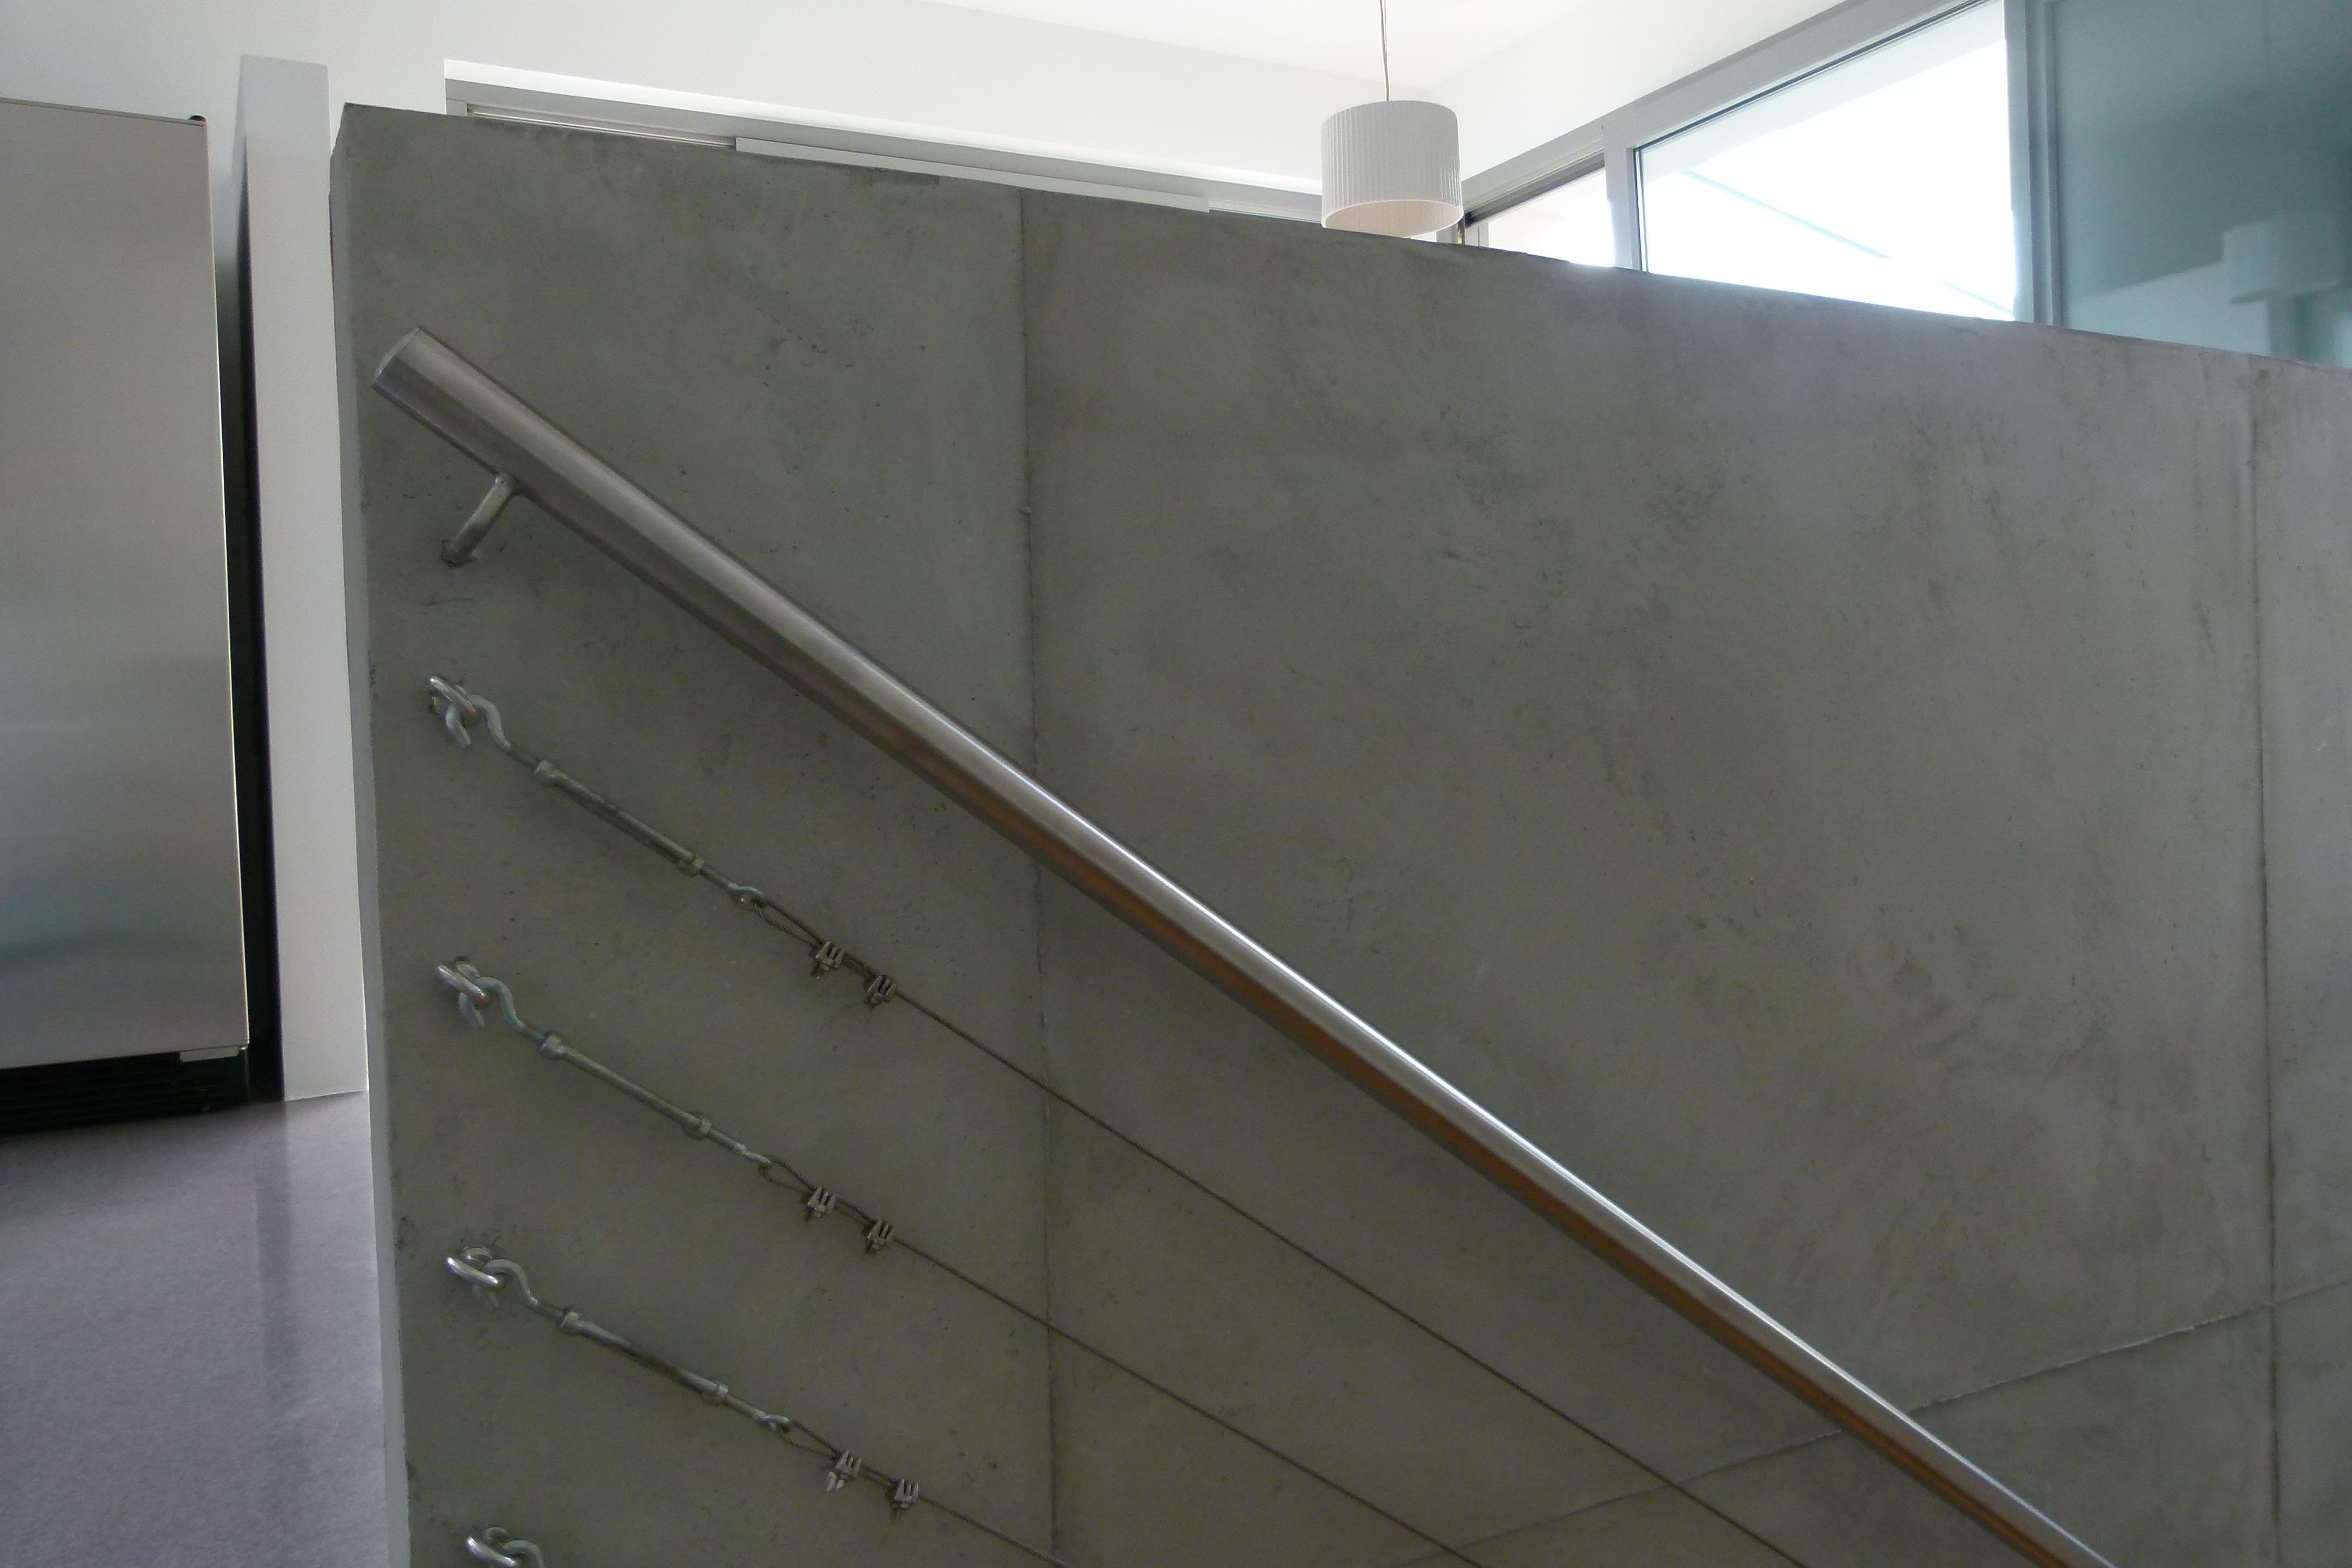 Brüstung in Betonoptik #betonwand #betonwandgestalten ©Ursula Kohlmann